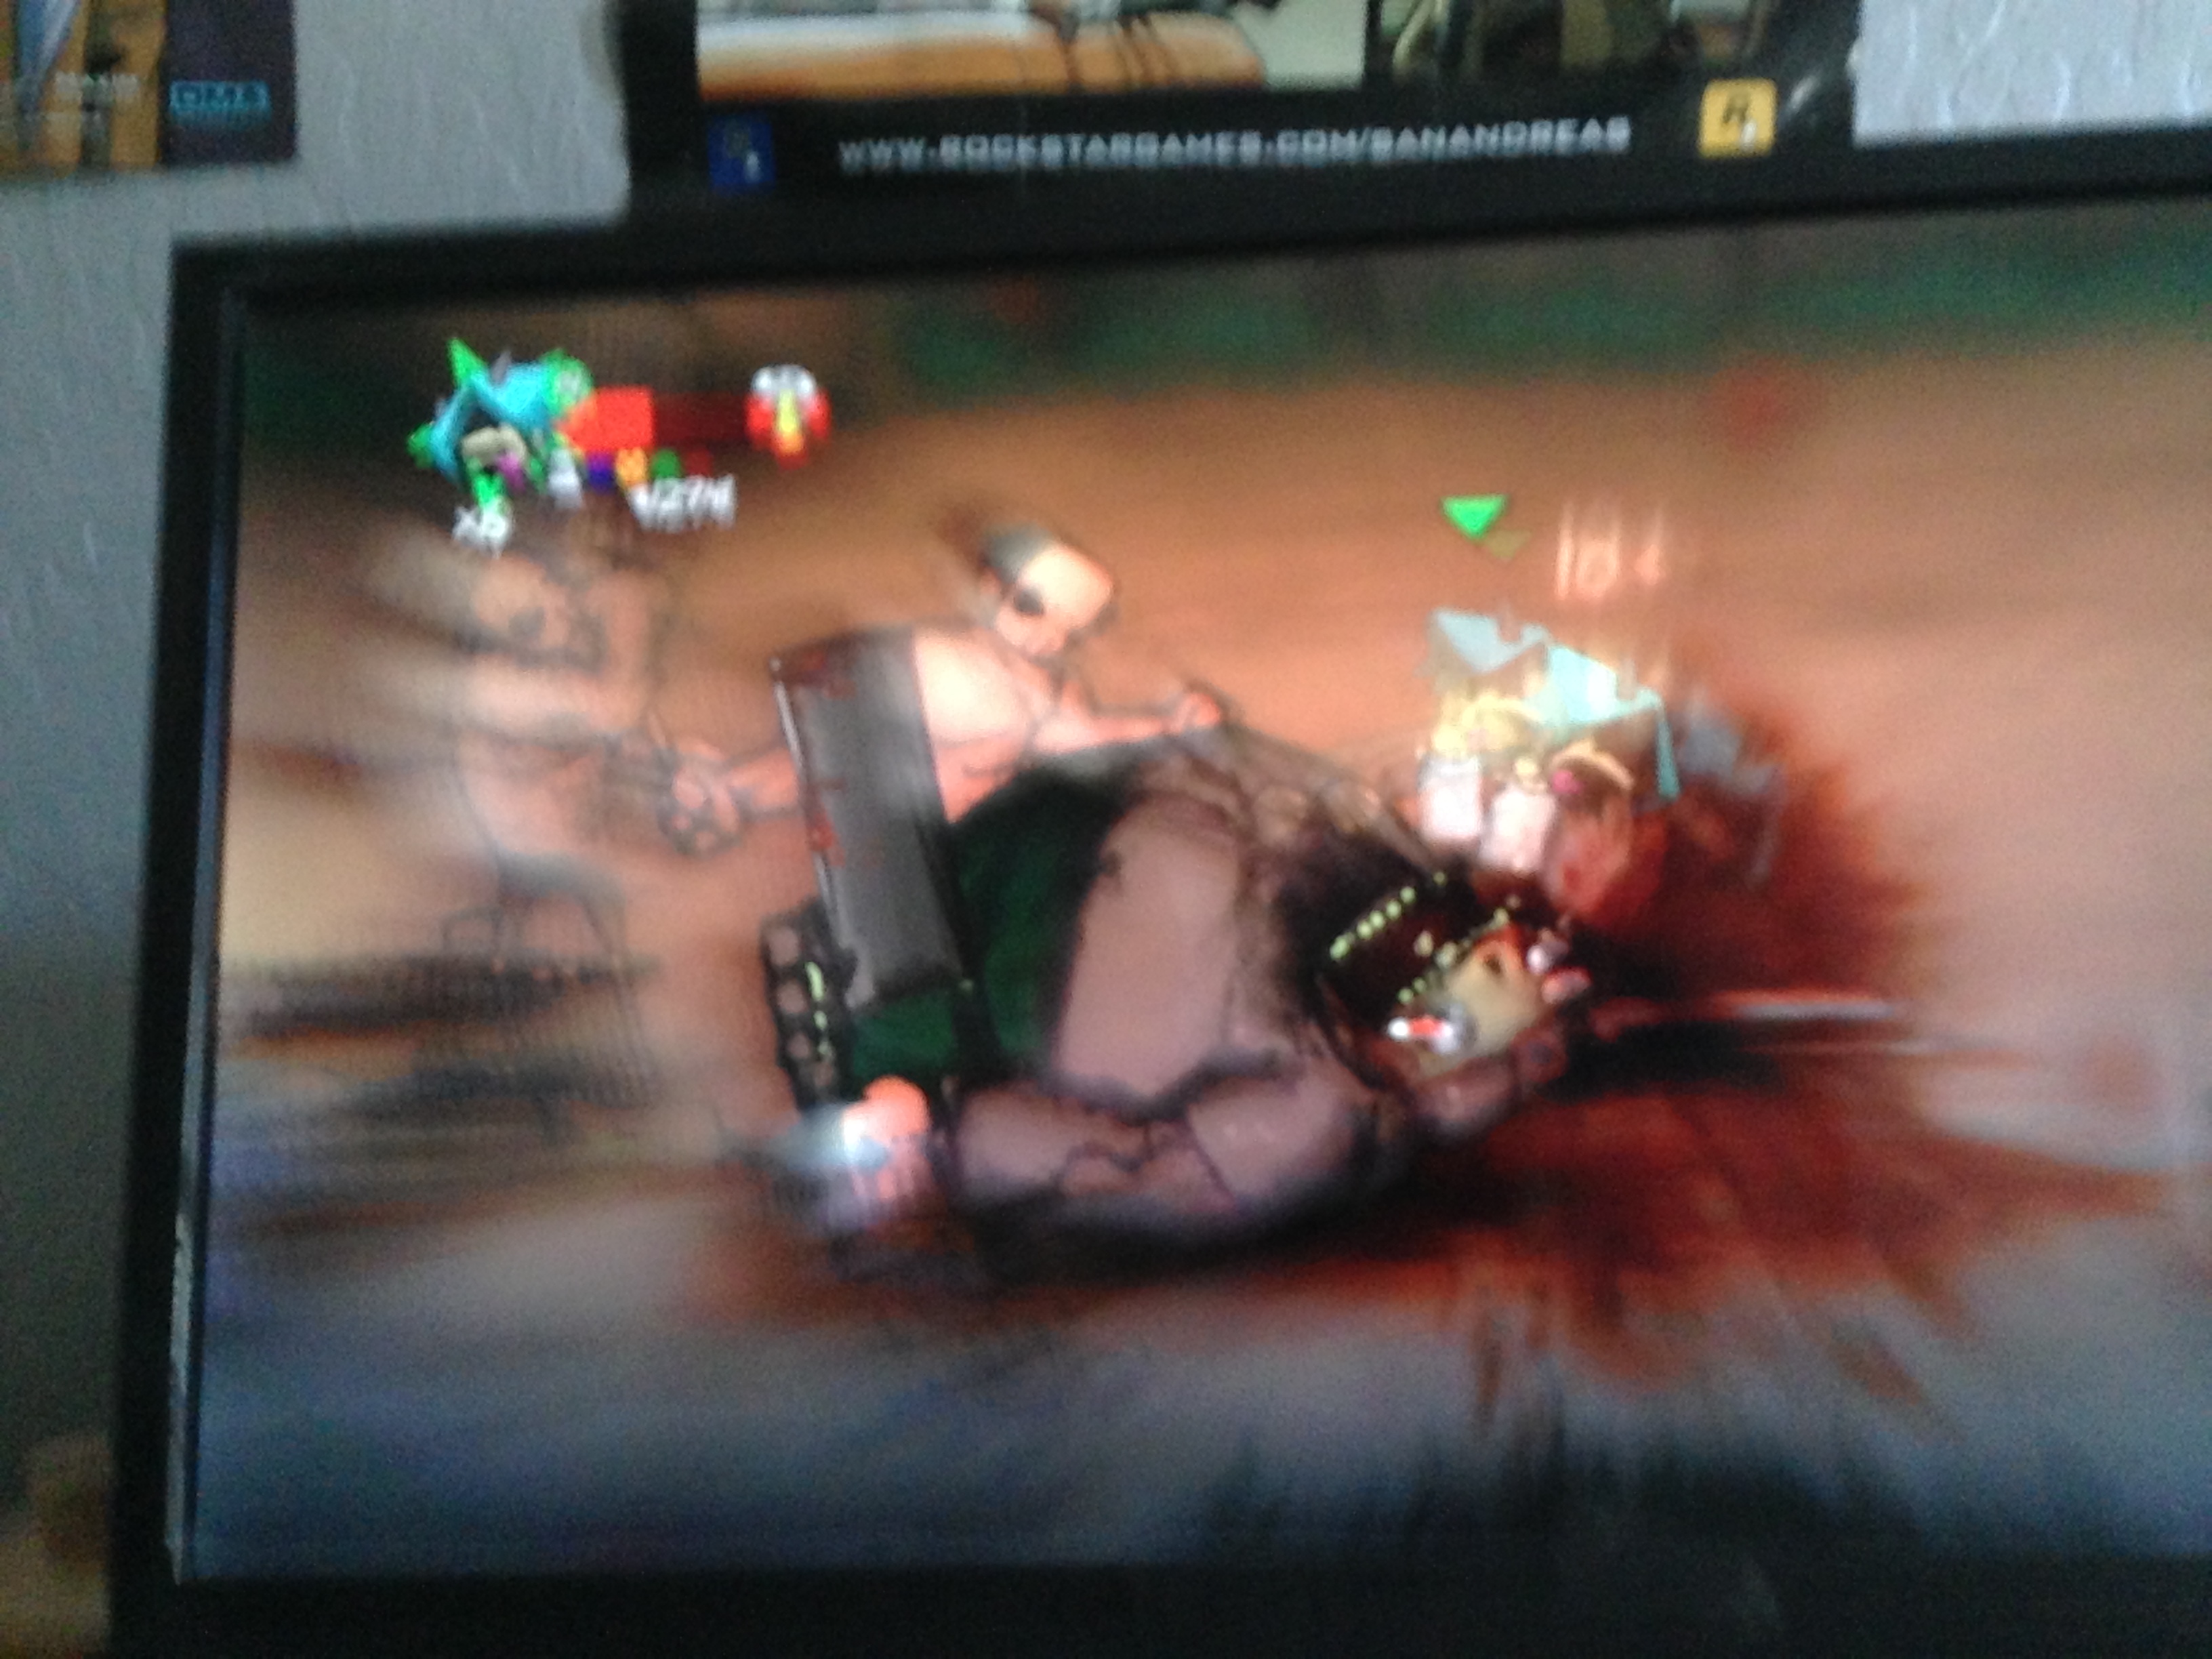 violent scene of video game violence